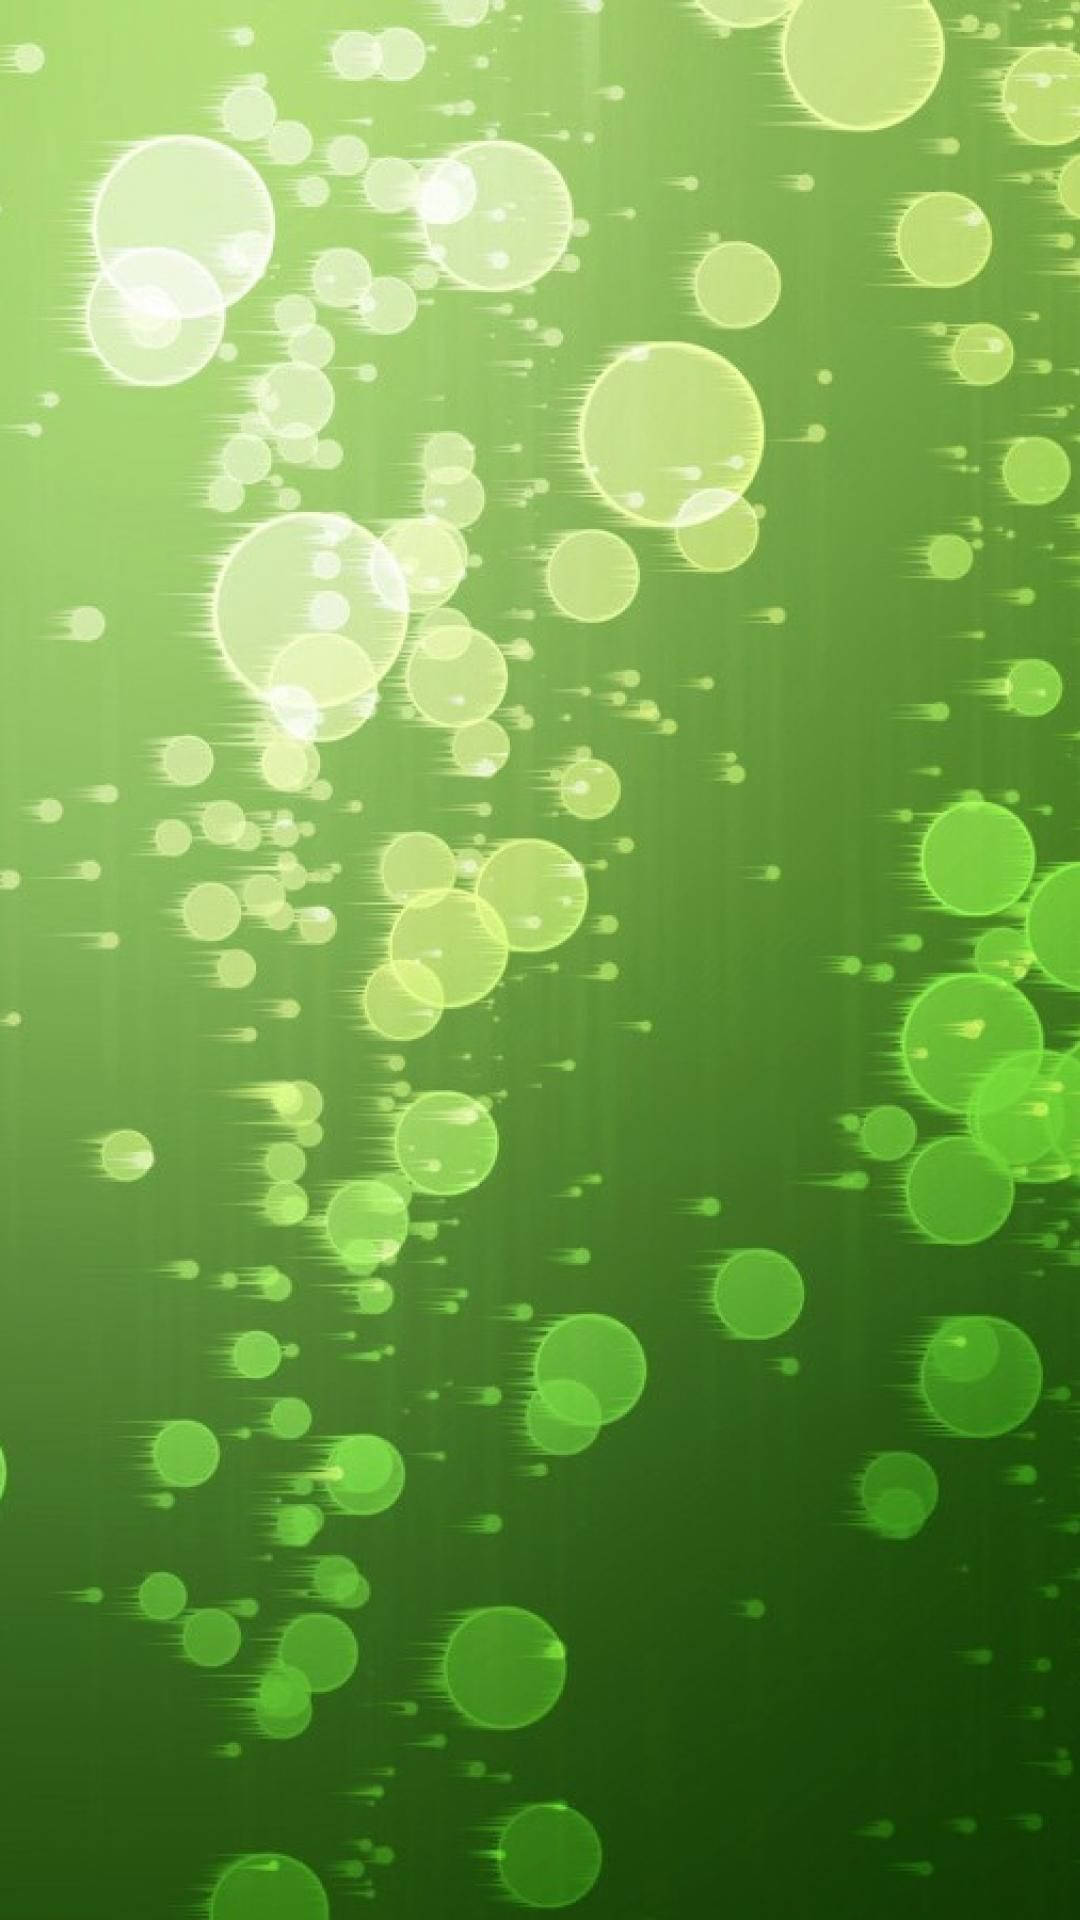 Aesthetic Energy of Light Green Bubbles Wallpaper